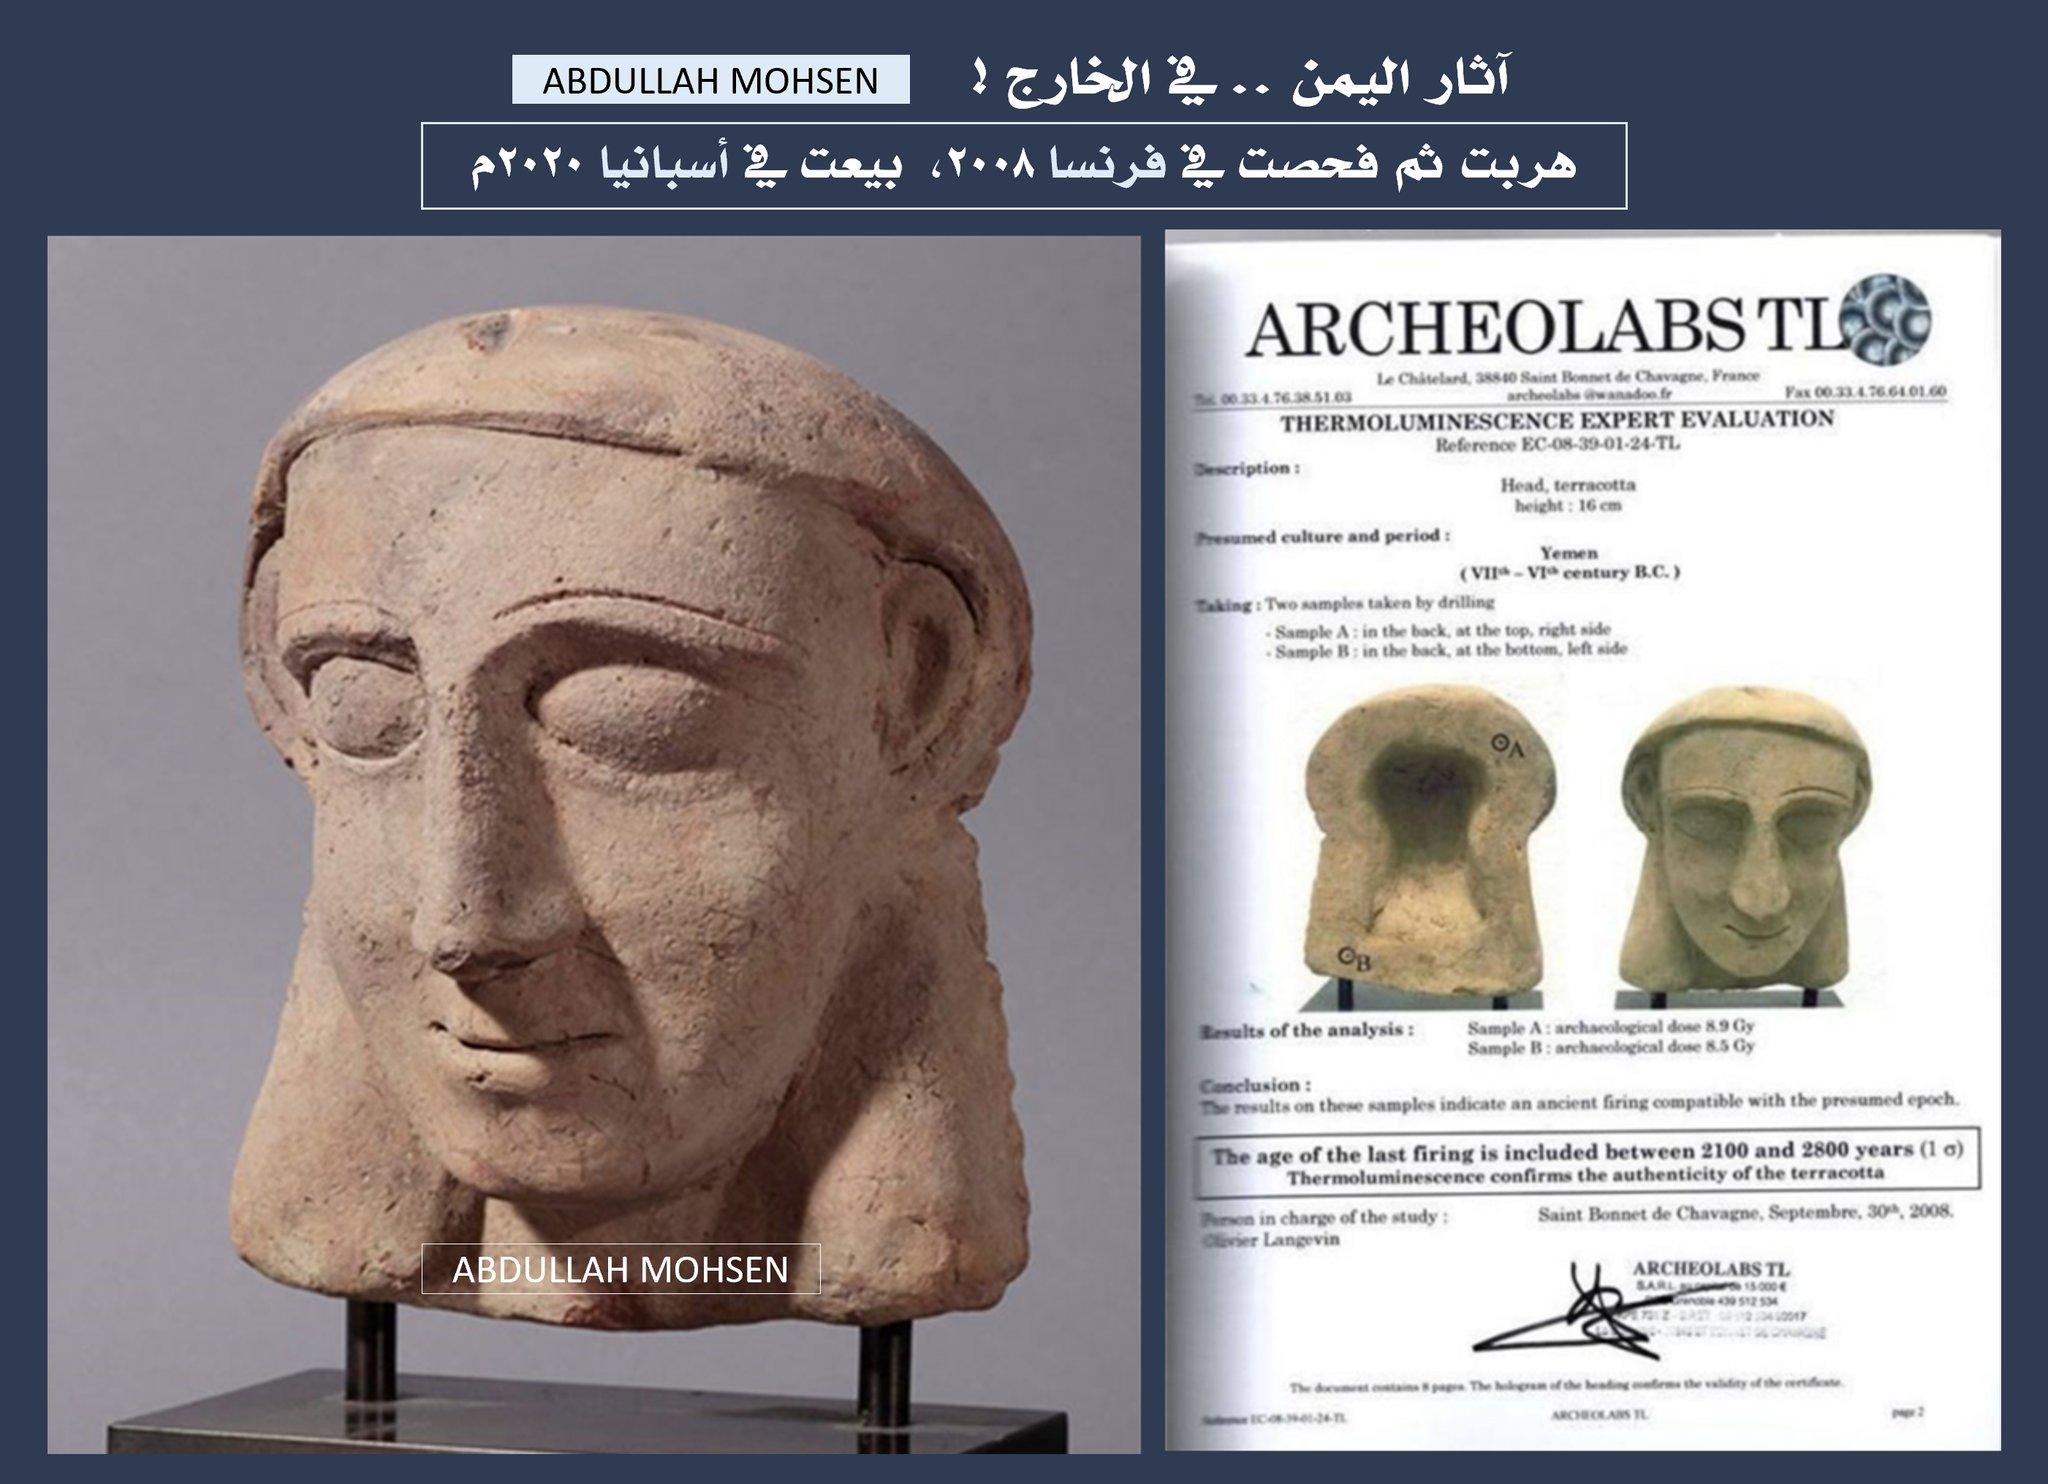 قبل أن يتهرب البشر هرب التاريخ.. الخبير محسن يسرد تفاصيل قطعة أثرية نادرة عمرها 2800 عام هربت من اليمن إلى أوروبا